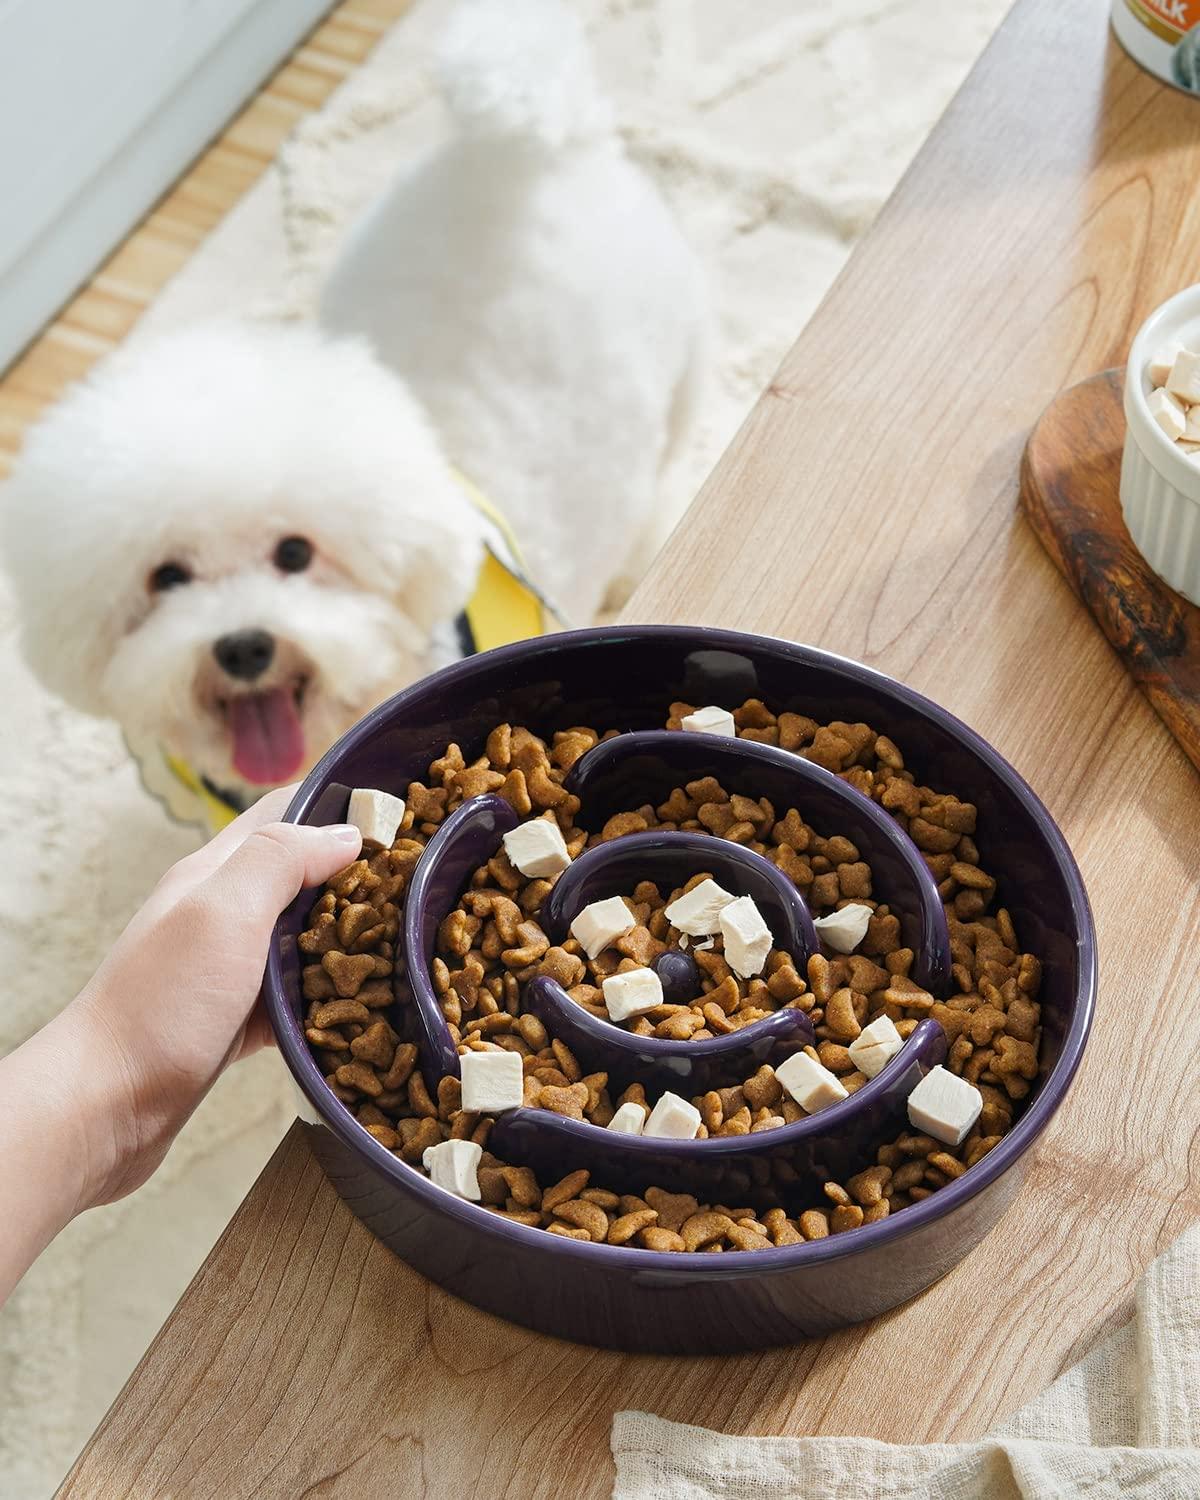 Slow Feeder Large Dog Bowls for Large Medium Dog Non Slip Maze